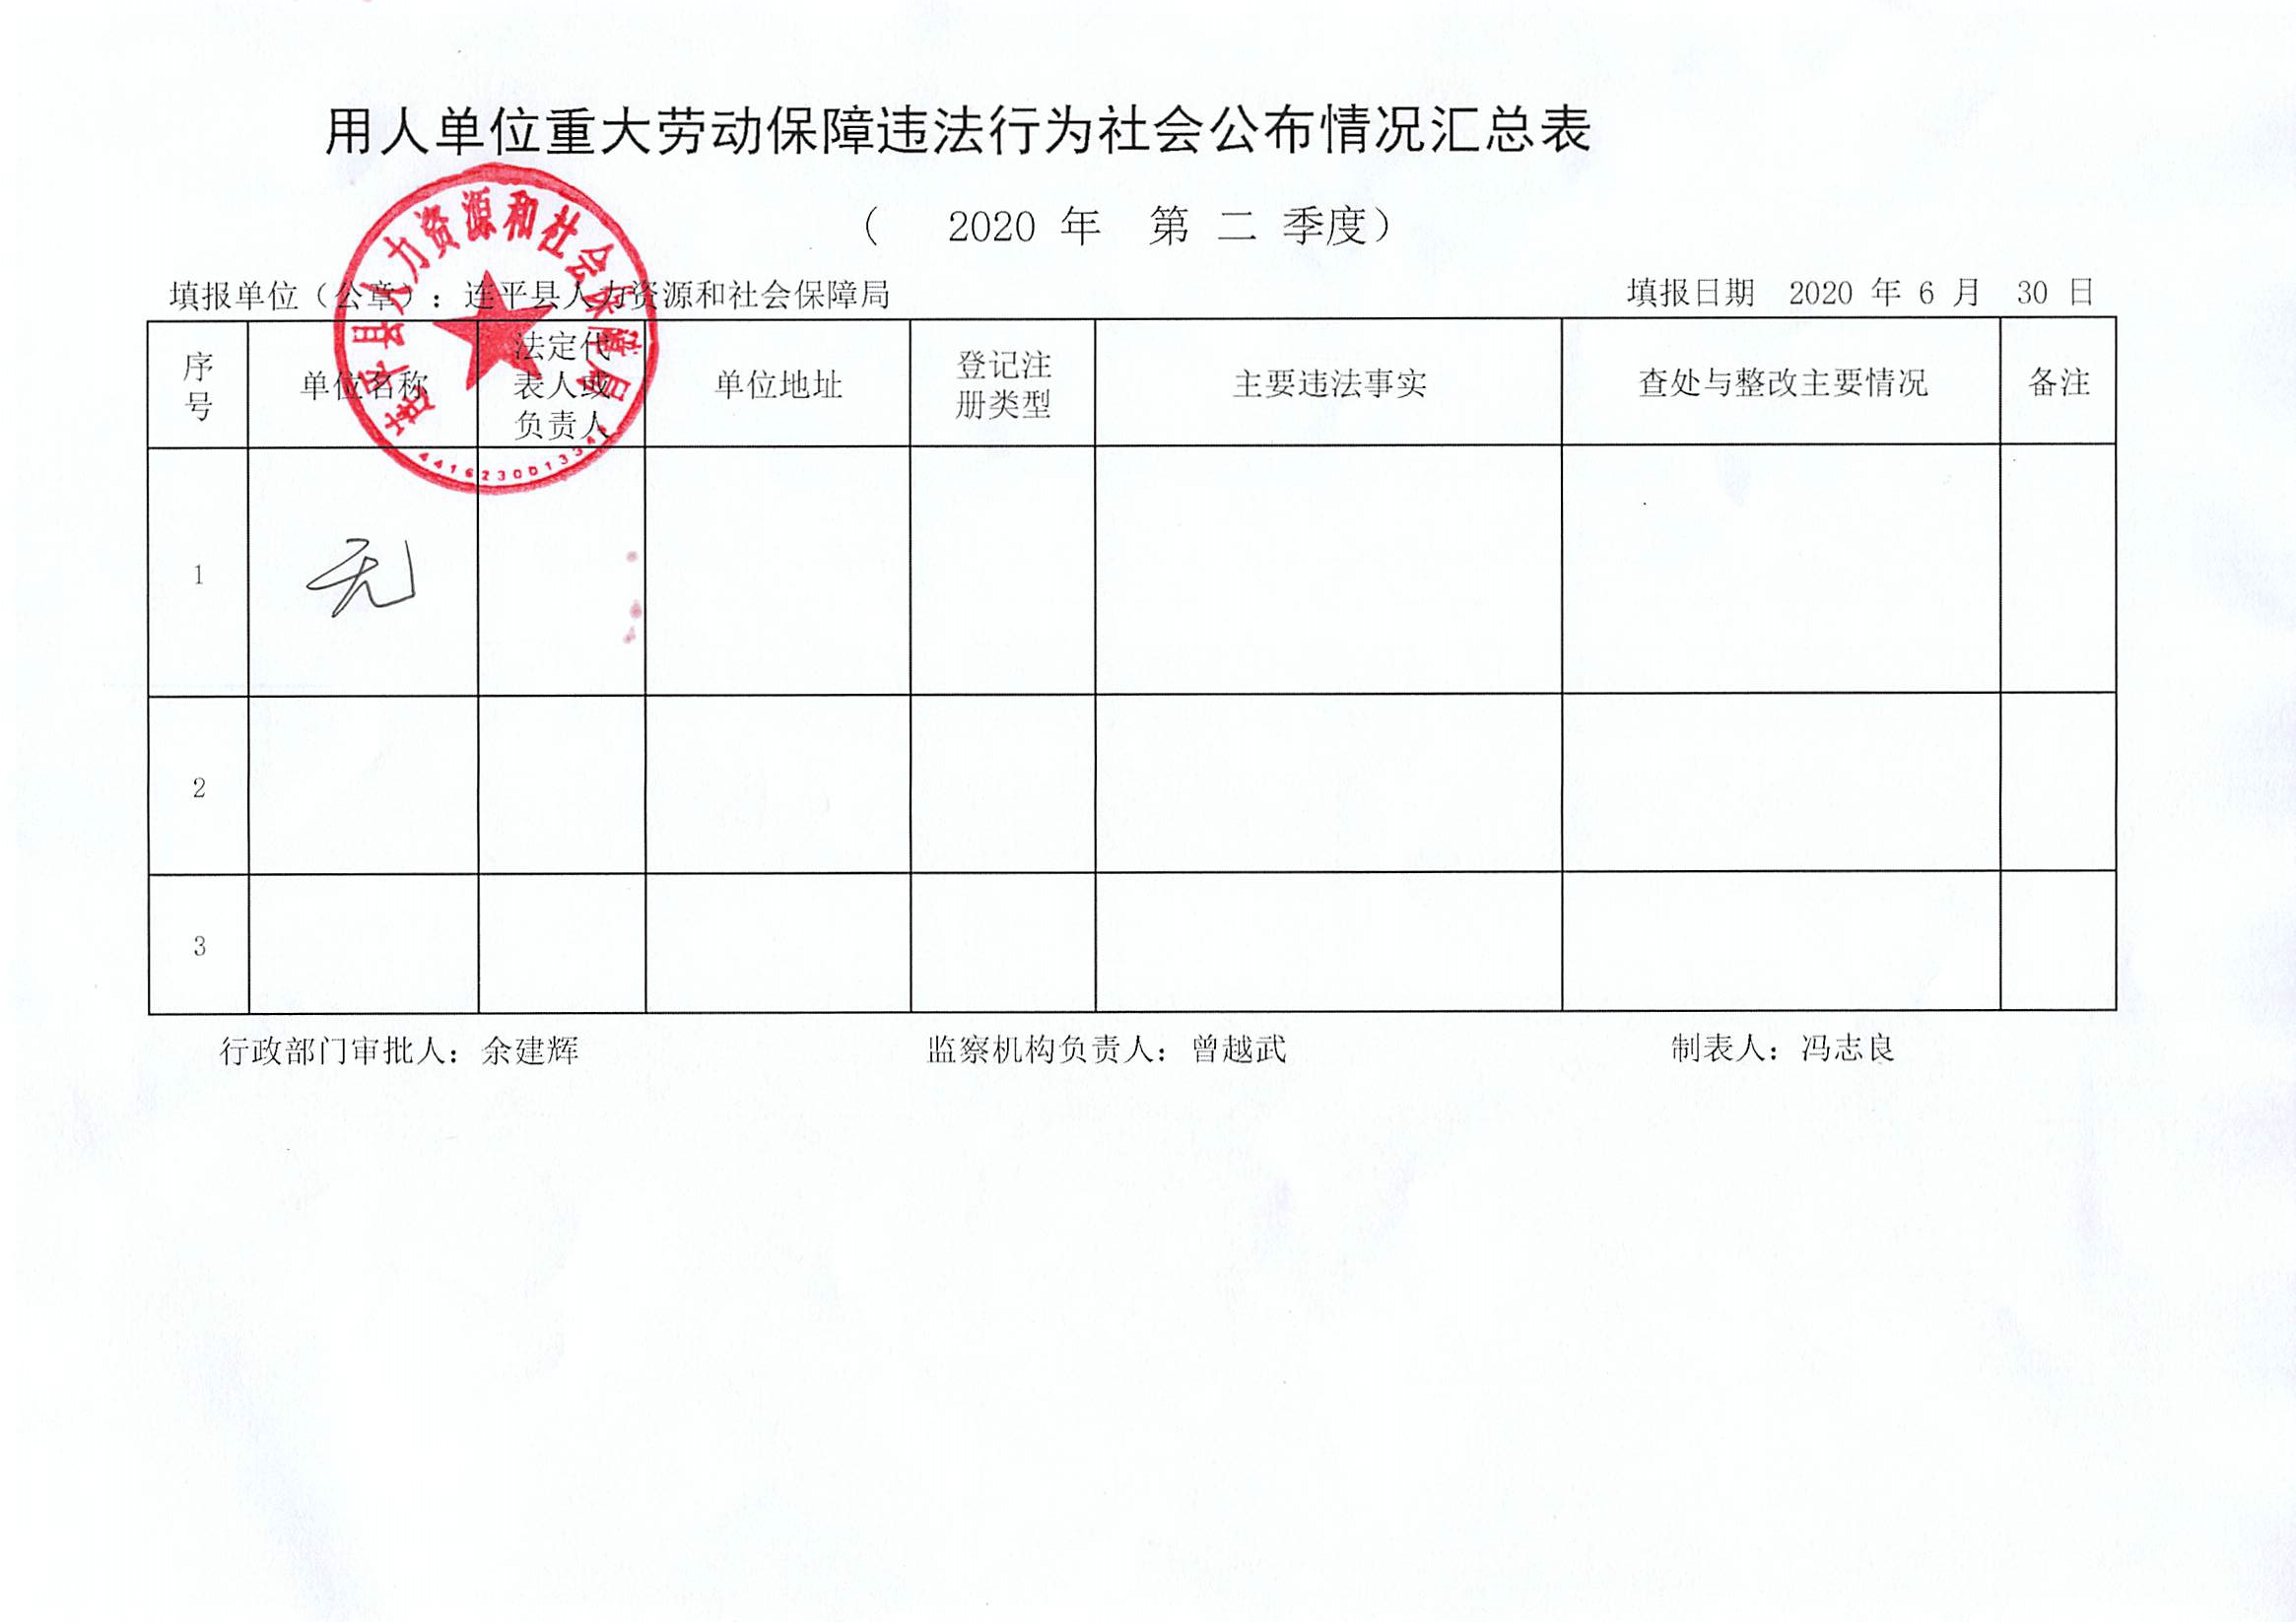 连平县用人单位重大劳动保障违法行为社会公布信息表（第二季度）.jpg